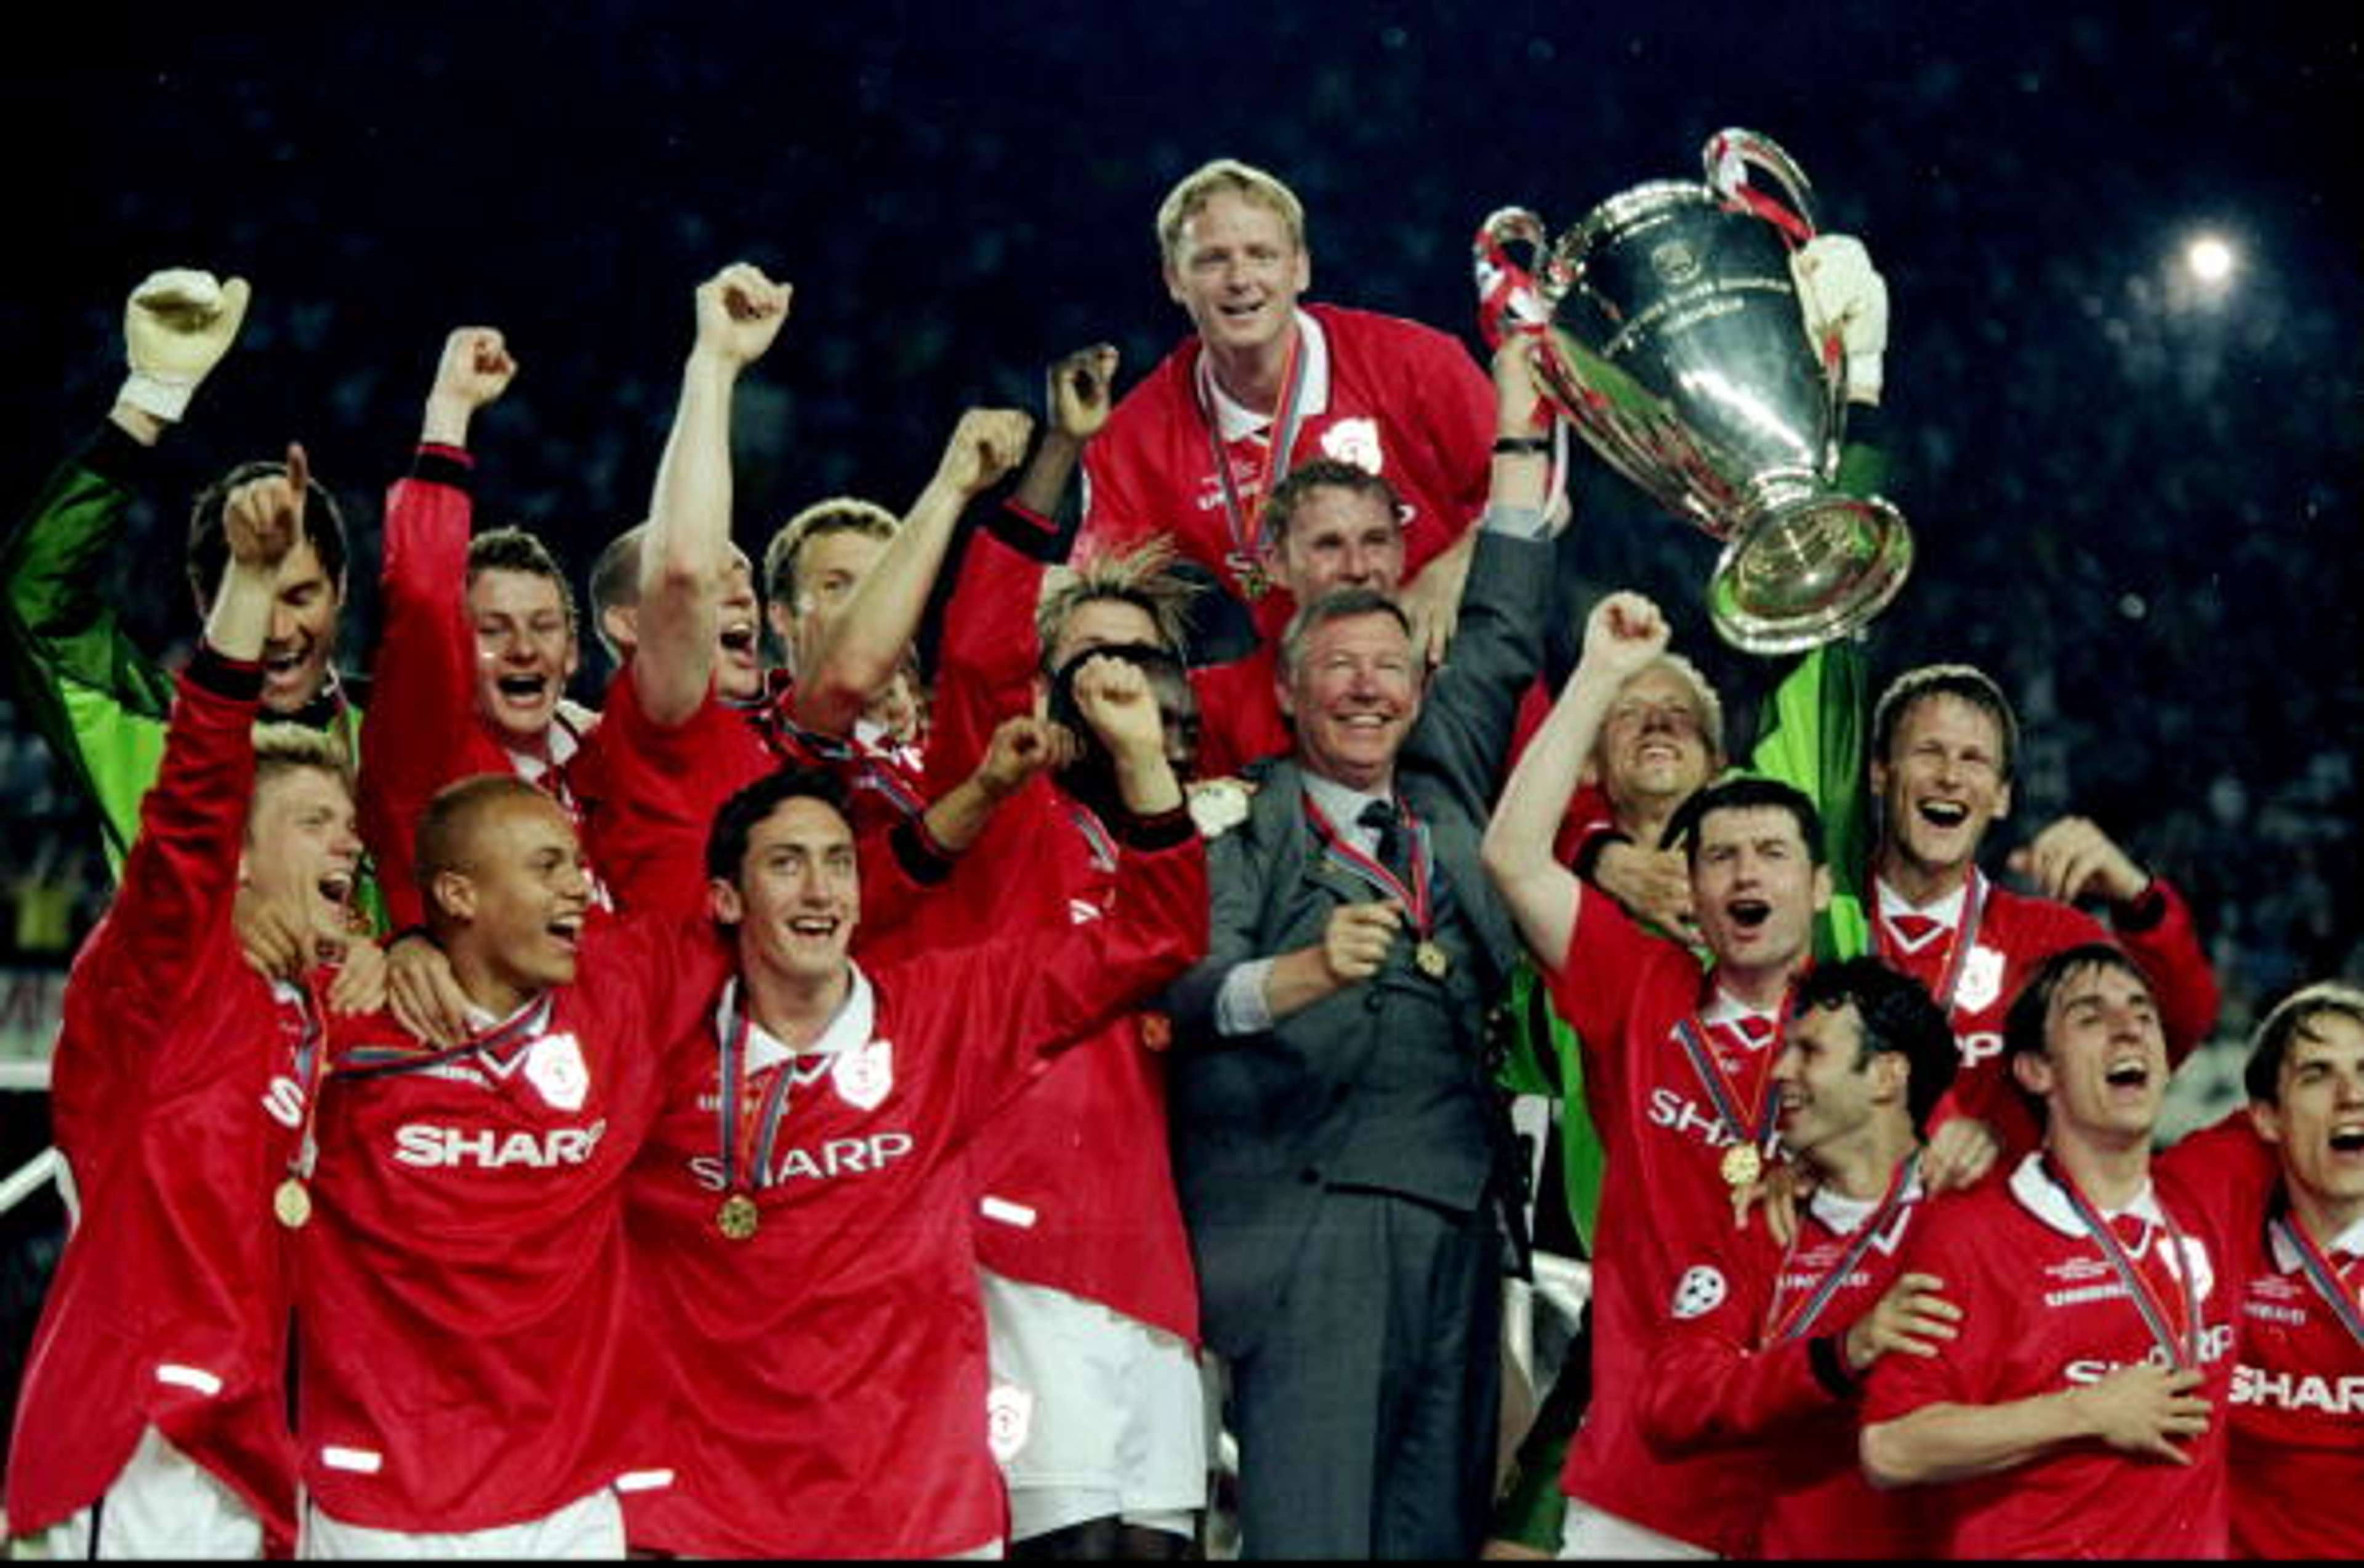 UCL_Manchester United 2-1 Bayern Munich_19990526